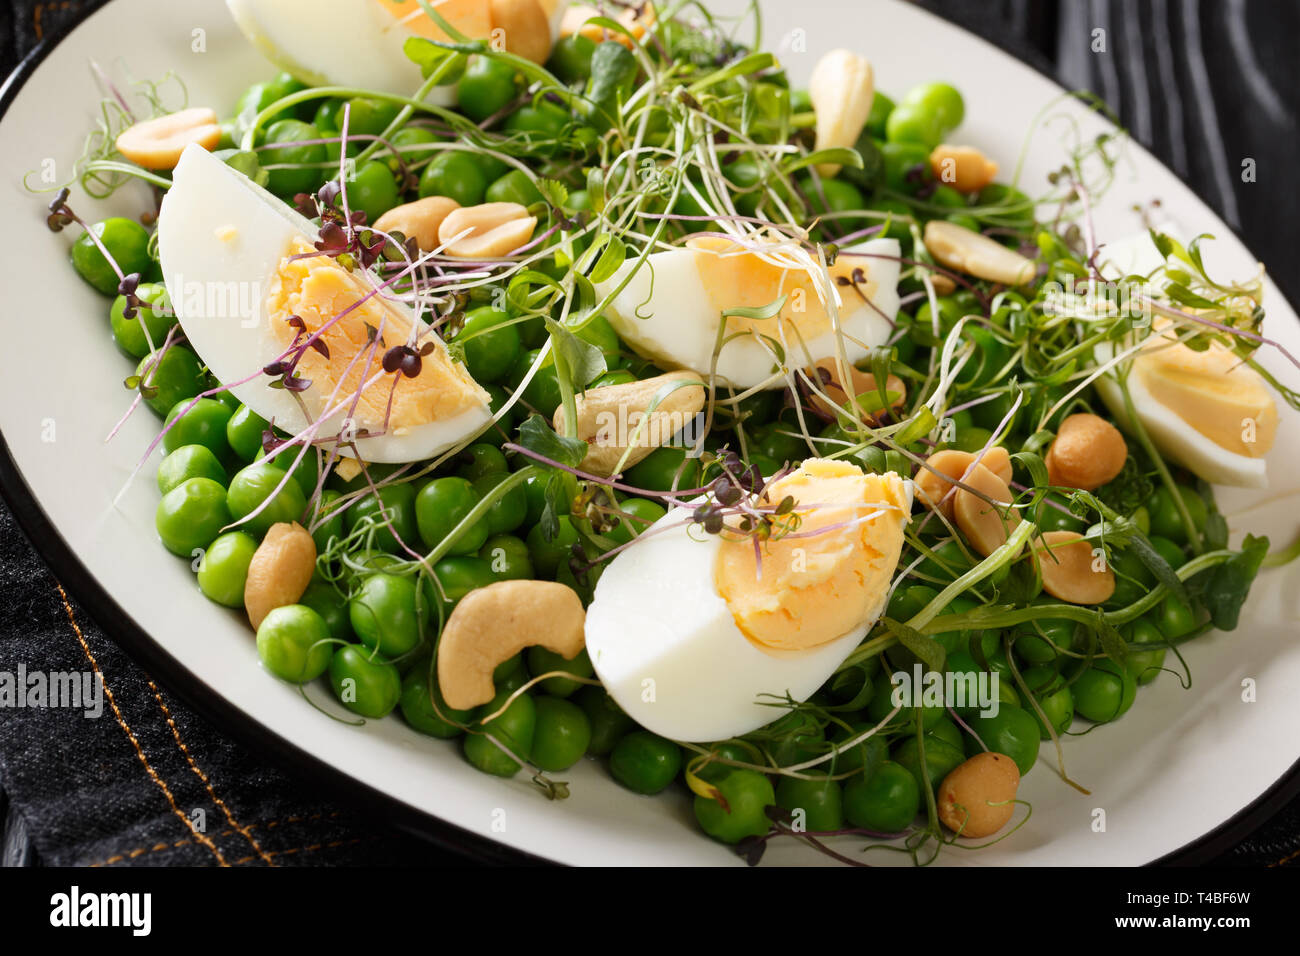 Leckeren, gesunden Salat von grünen Erbsen, micro Grüns, Nüsse und Eier close-up auf einem Schild auf dem Tisch gekocht. Horizontale Stockfoto